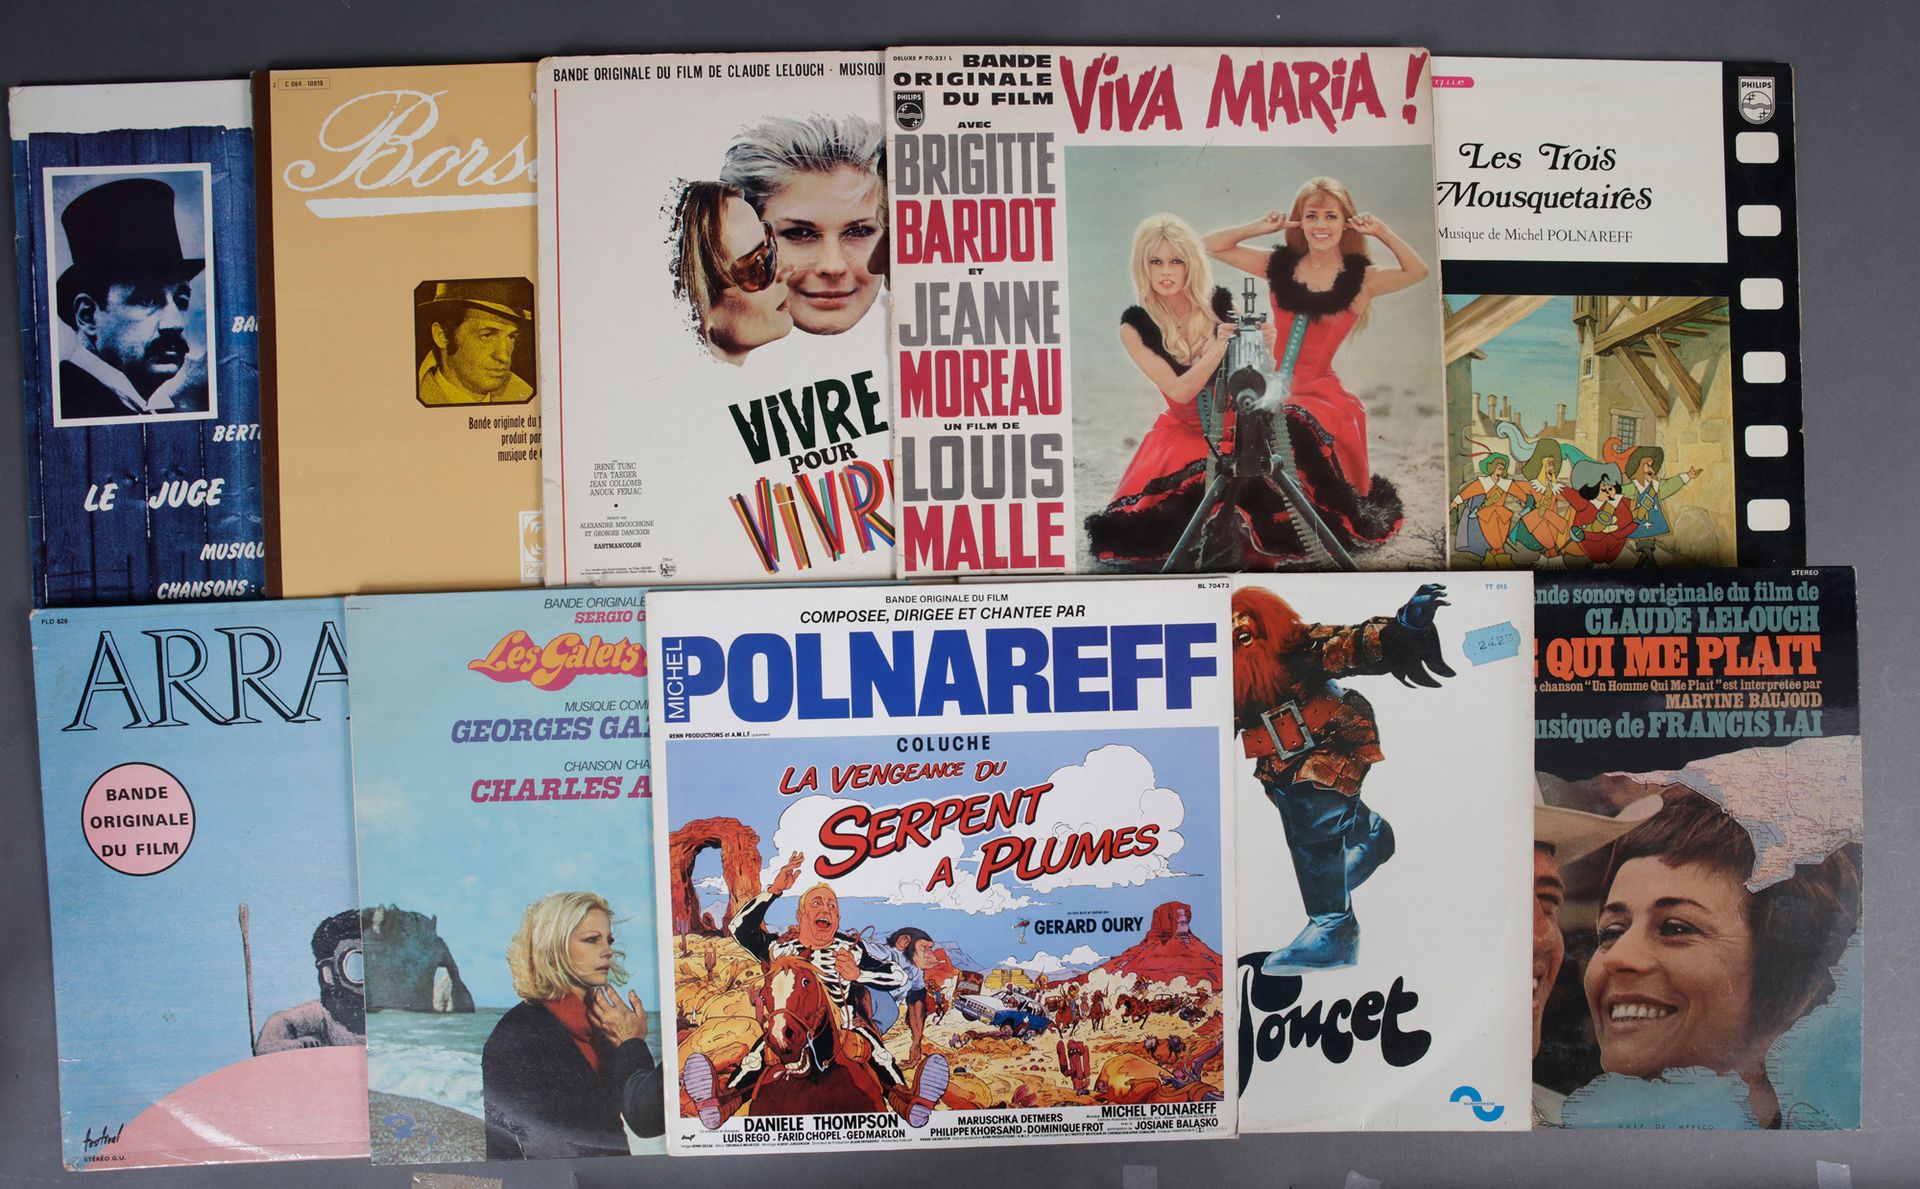 Null CINEMA / FILM MUSIC
1 set of 10 original 33 rpm vinyl records of film music&hellip;